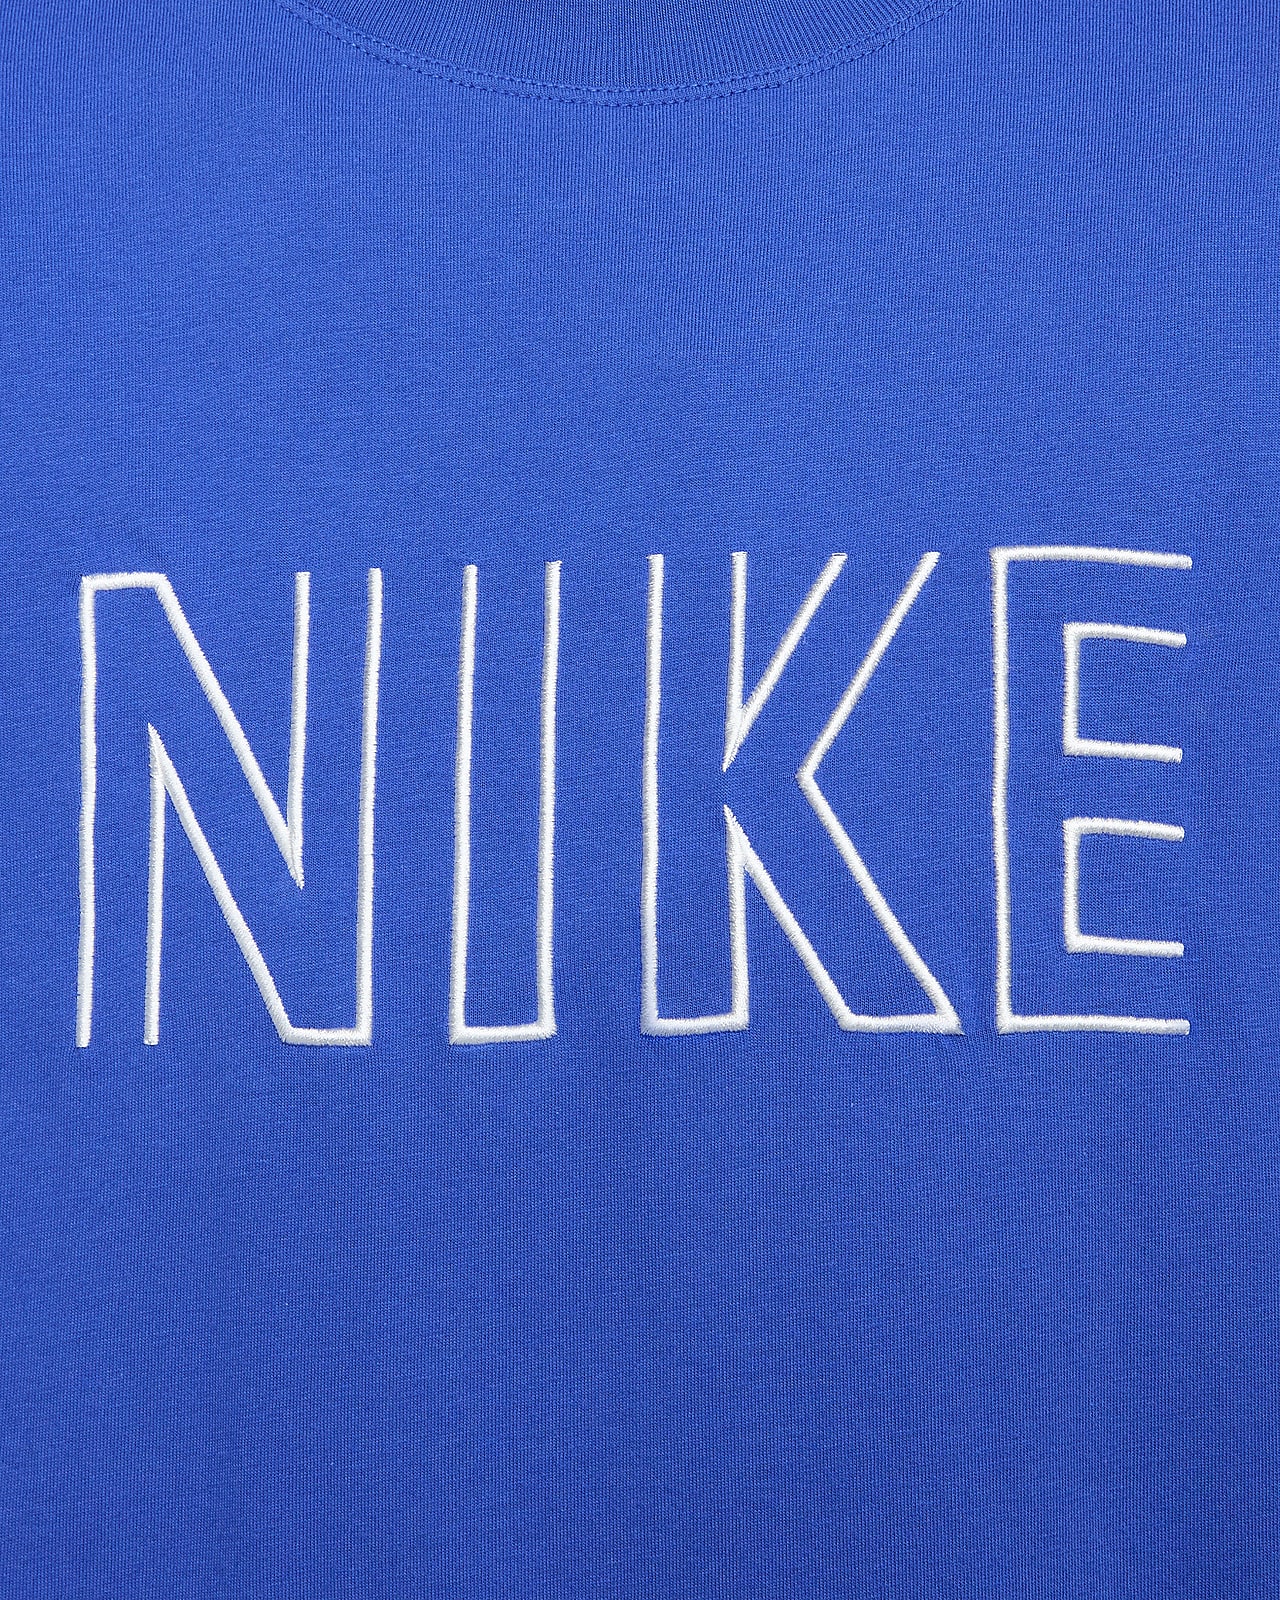 Nike Sportswear Women's T-Shirt.